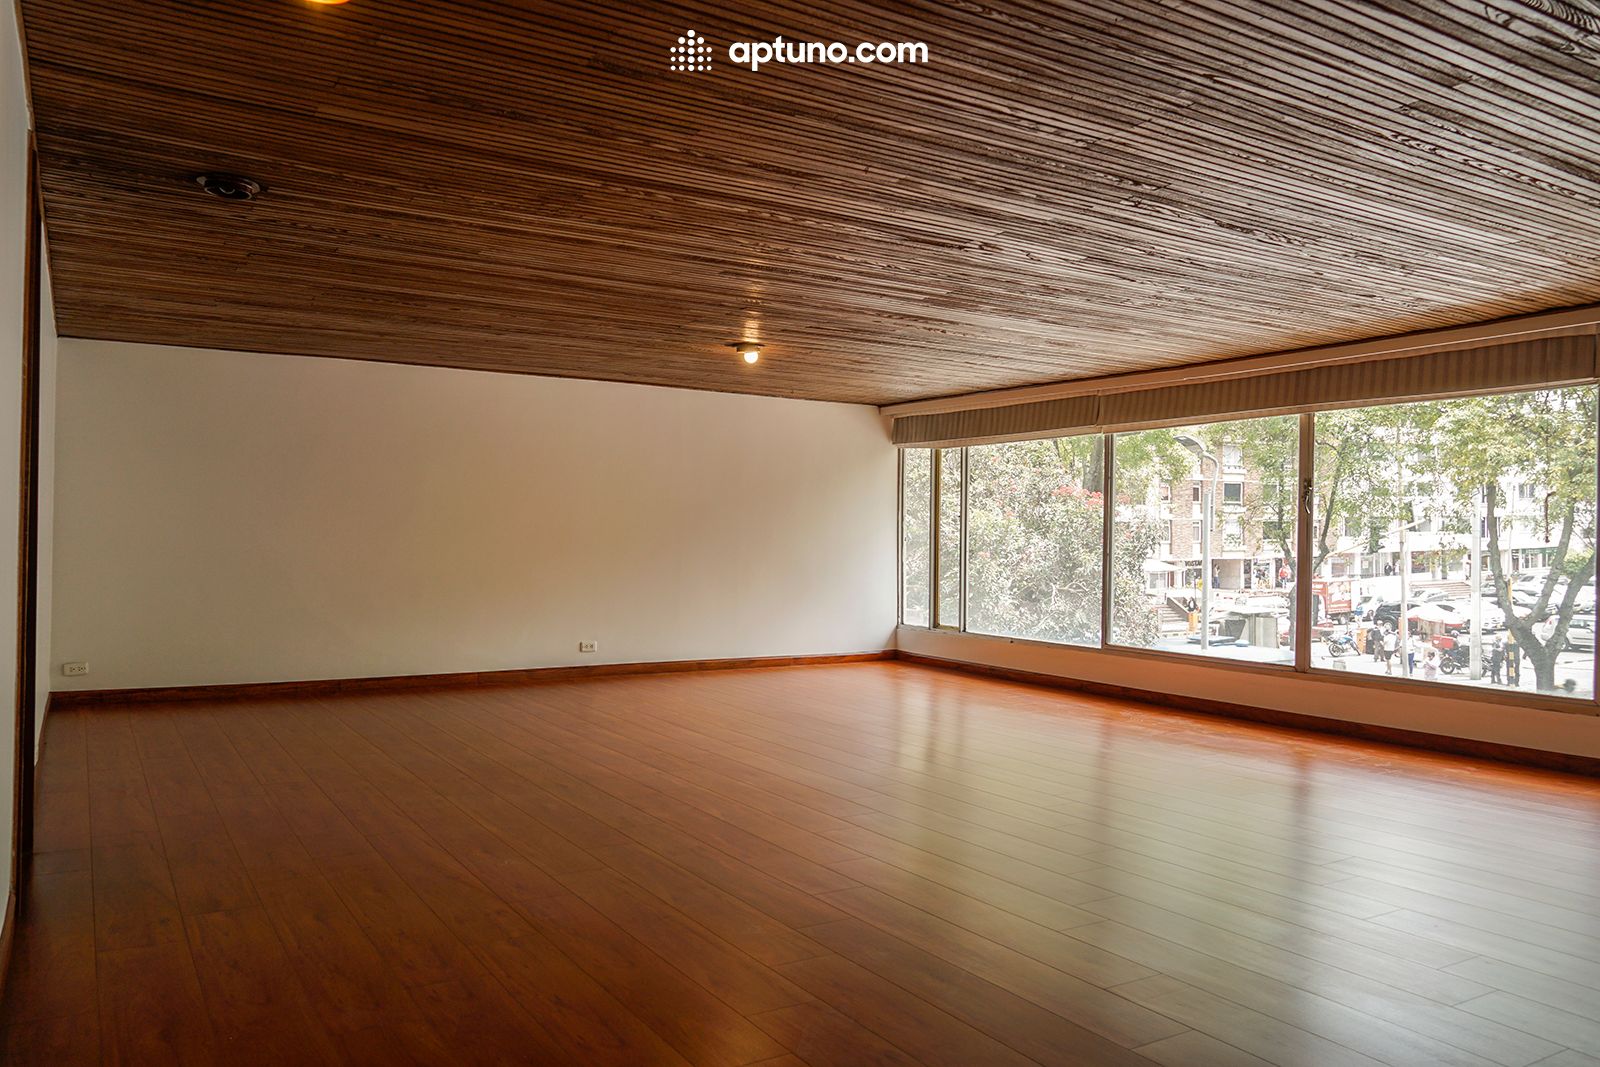 Apartamento en arriendo Chicó Norte II Sector 170 m² - $ 4.000.000,00